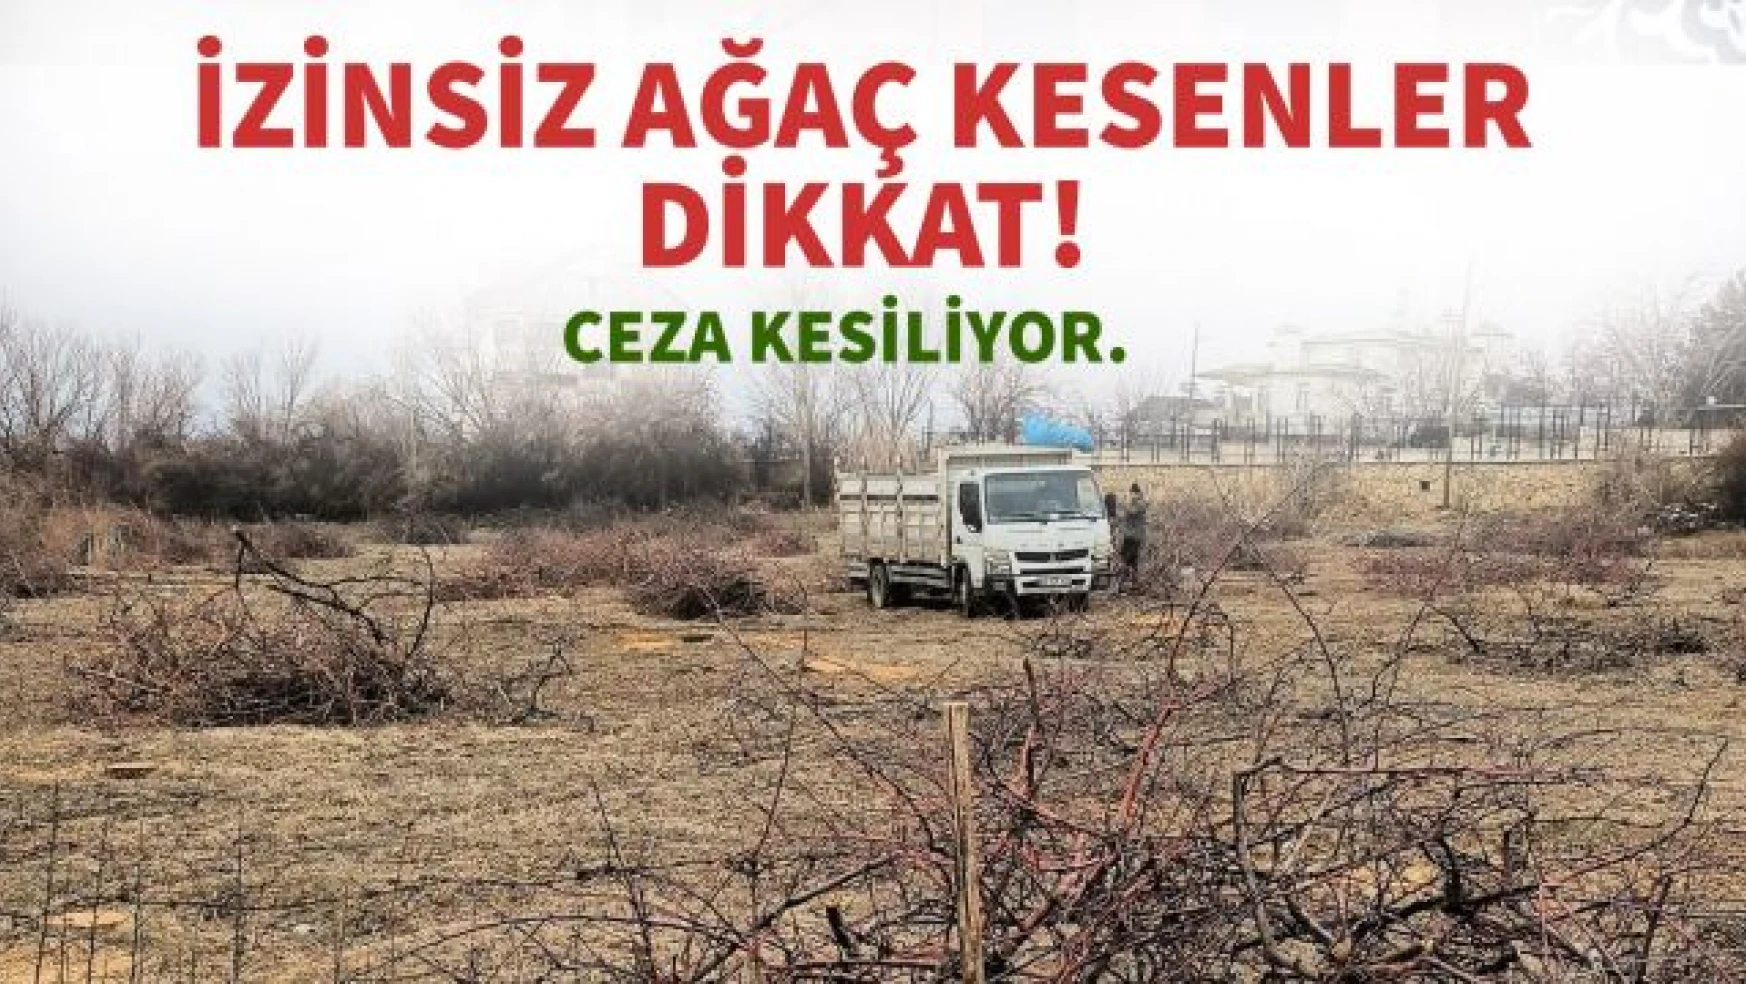 Edremit Belediyesi'nden izinsiz ağaç kesenlere ceza!